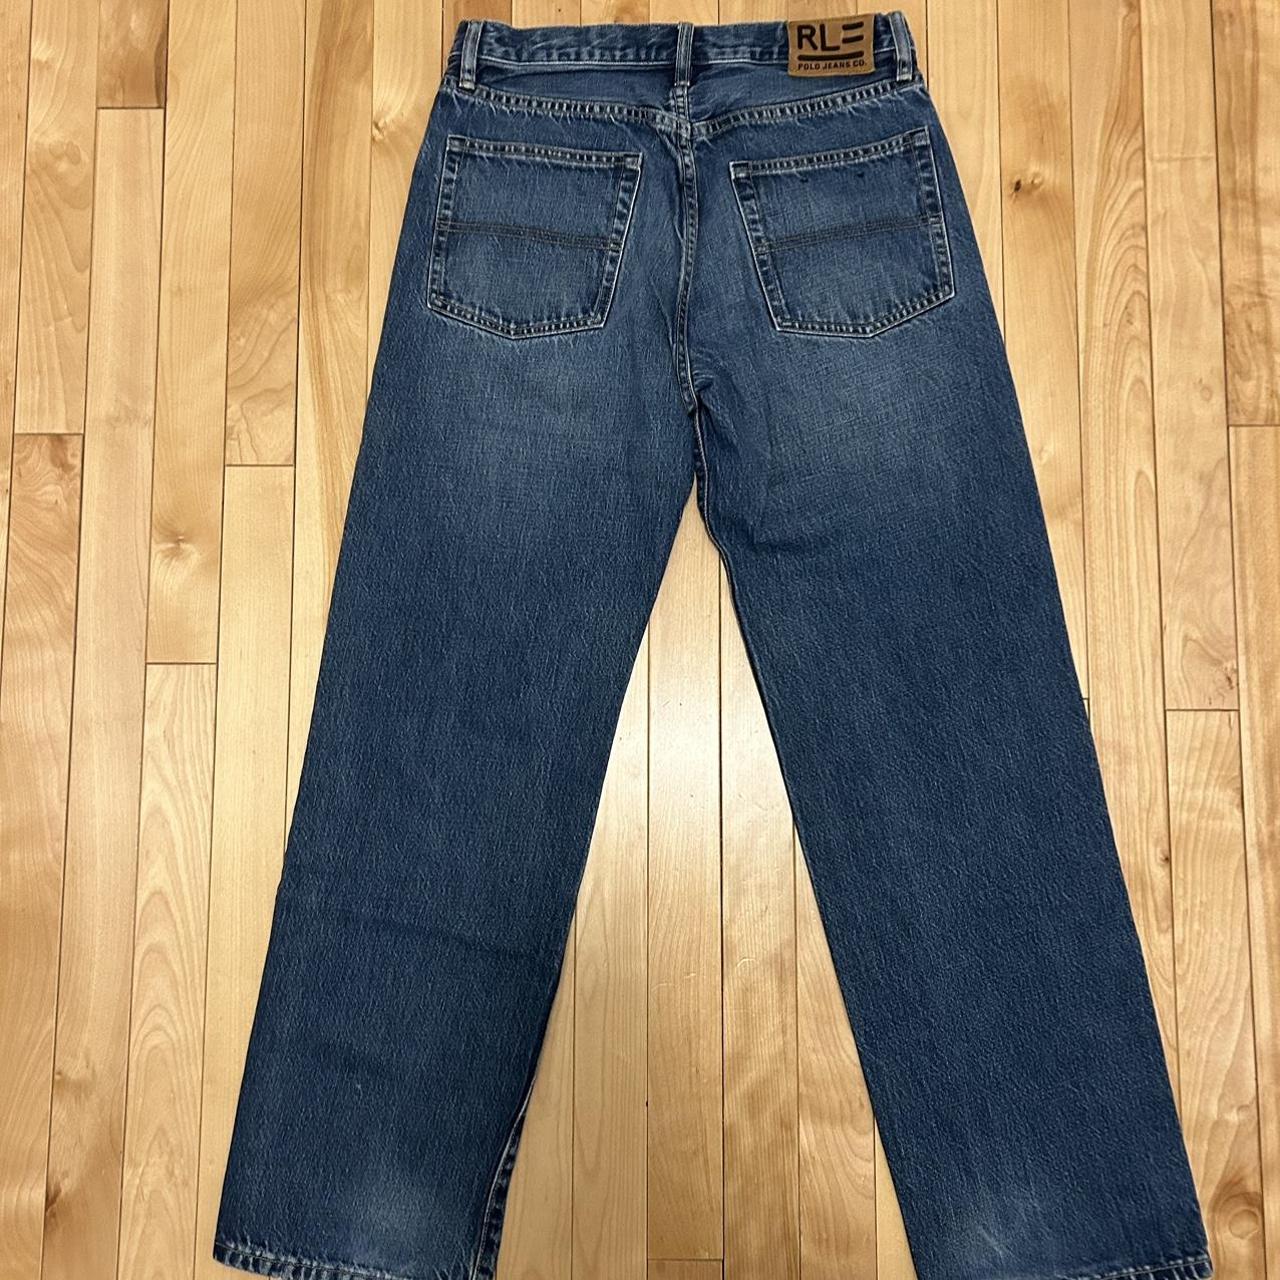 Vintage Polo Ralph Lauren Jeans Size 30-32 - Depop